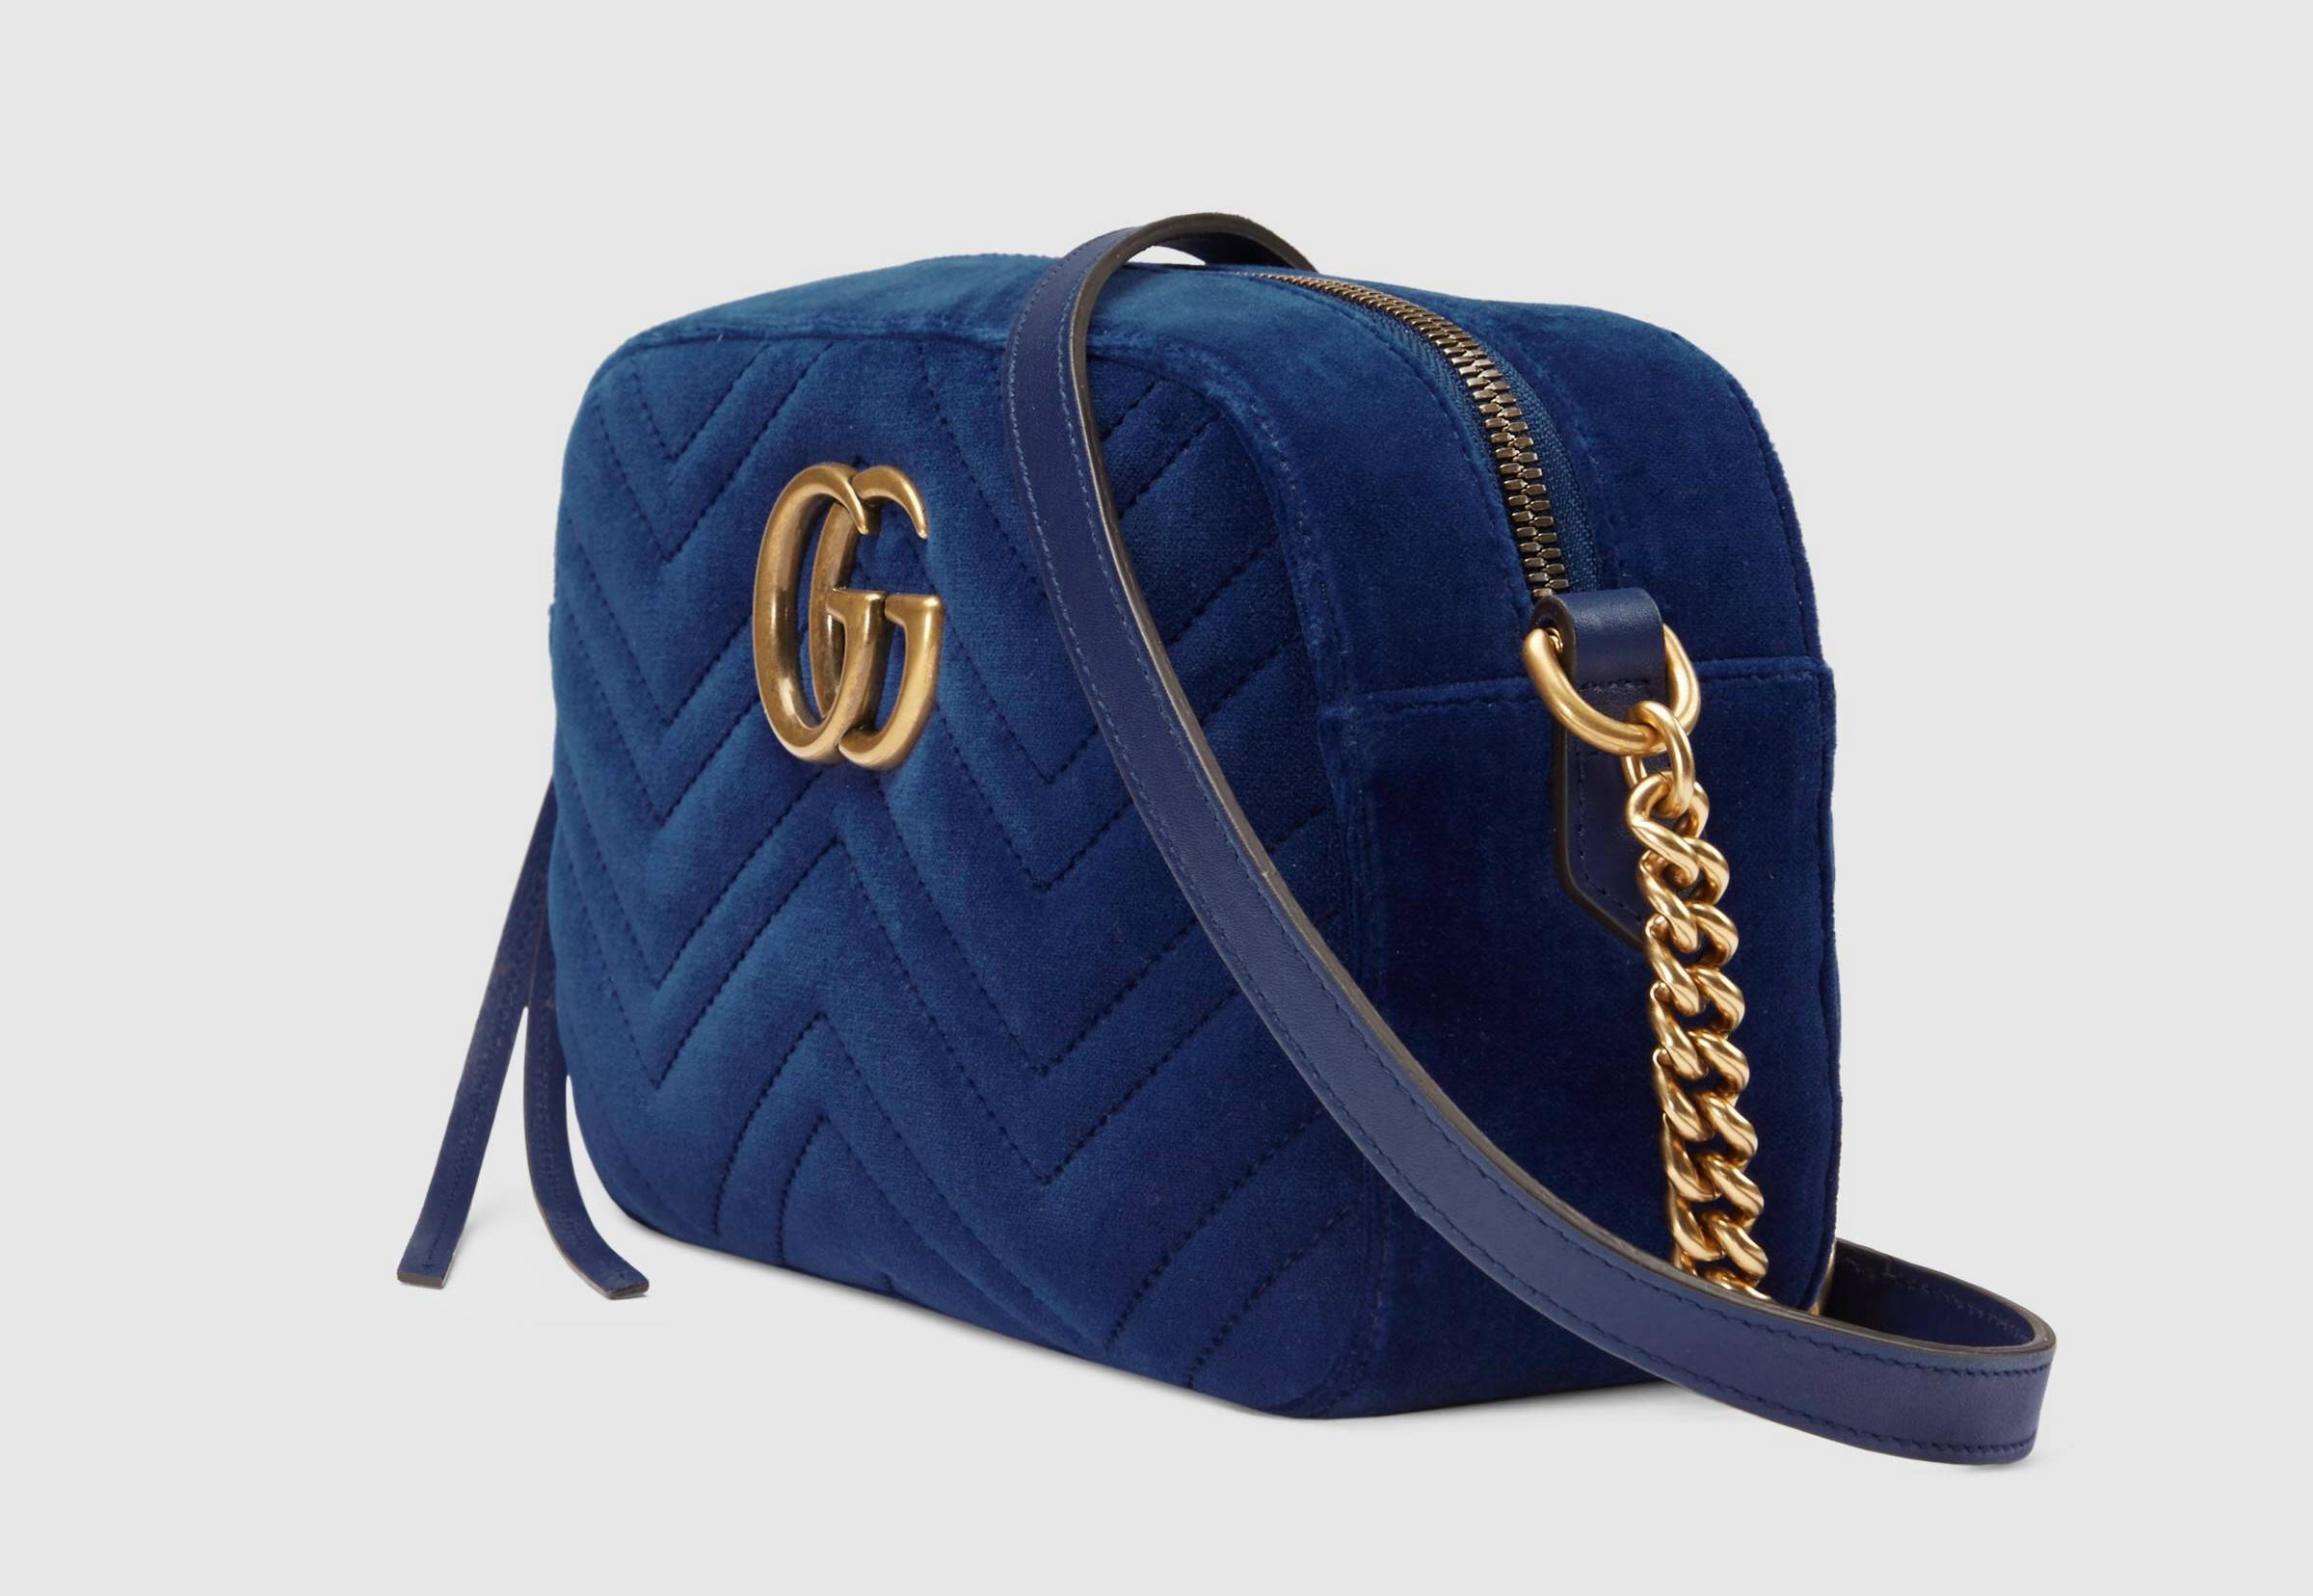 Natale 2018: Borsa a spalla Gucci GG Marmont in velluto misura piccola